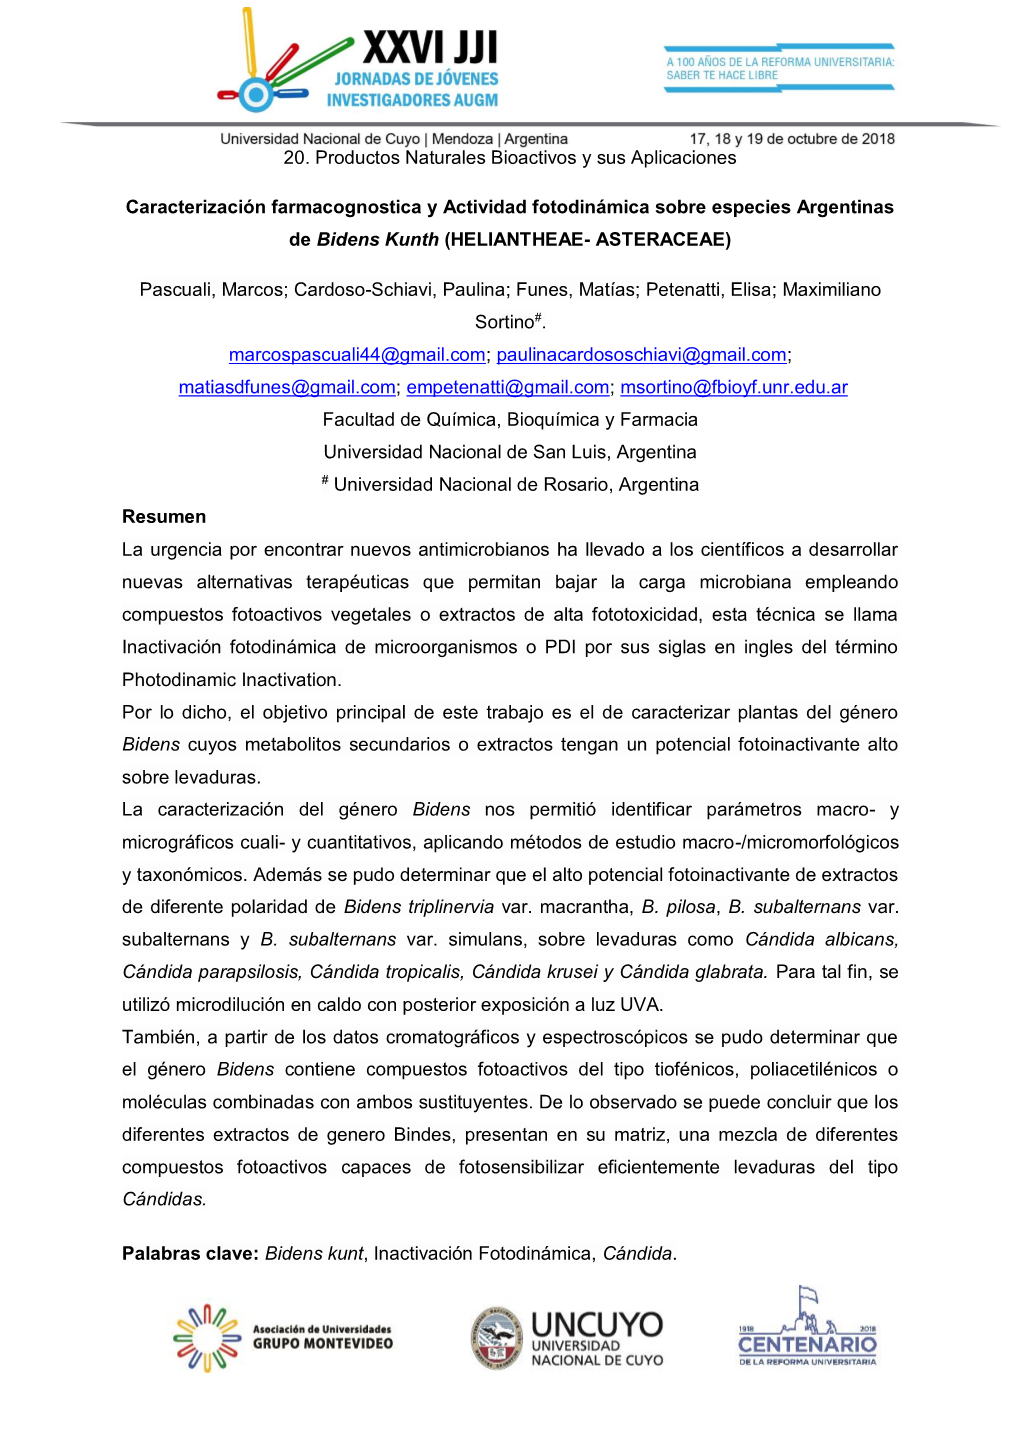 Caracterización Farmacognostica Y Actividad Fotodinámica Sobre Especies Argentinas De Bidens Kunth (Heliantheae-Astercaceae)